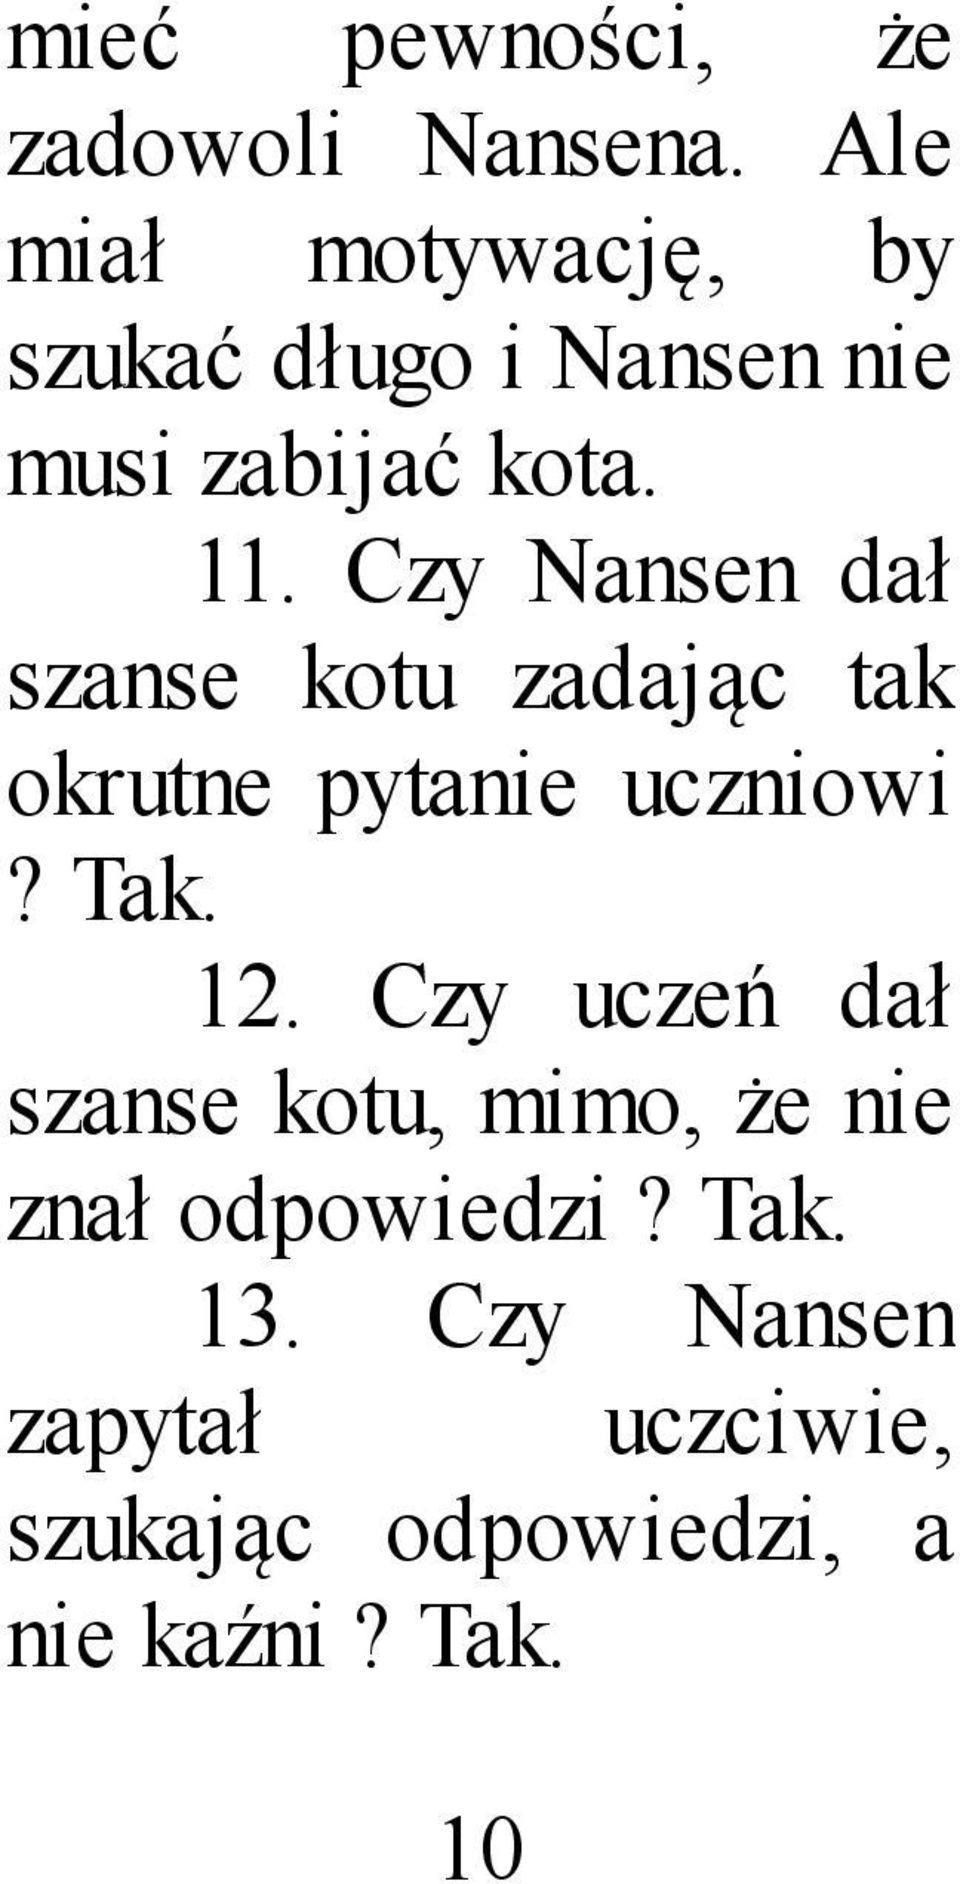 Czy Nansen dał szanse kotu zadając tak okrutne pytanie uczniowi? Tak. 12.